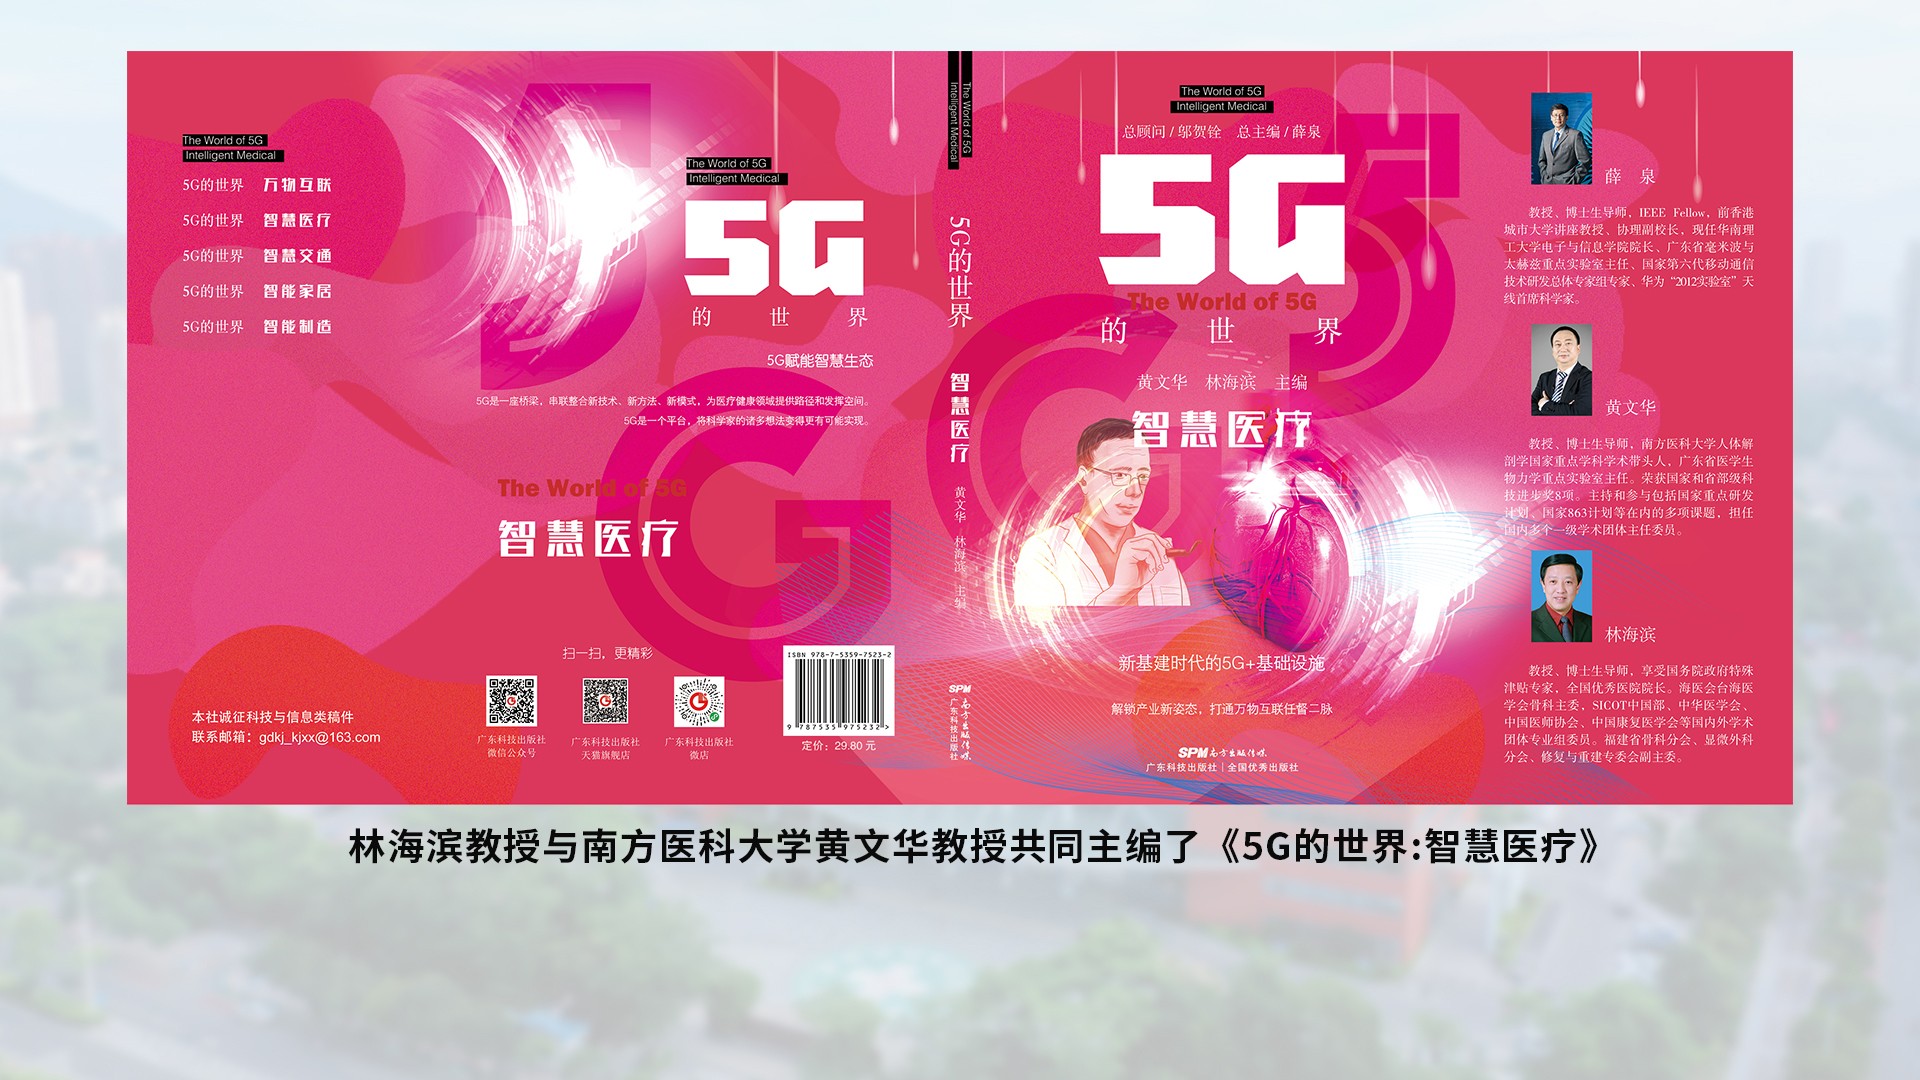 林海滨教授与南方医科大学黄文华教授共同主编了5G的世界智慧医疗.jpg